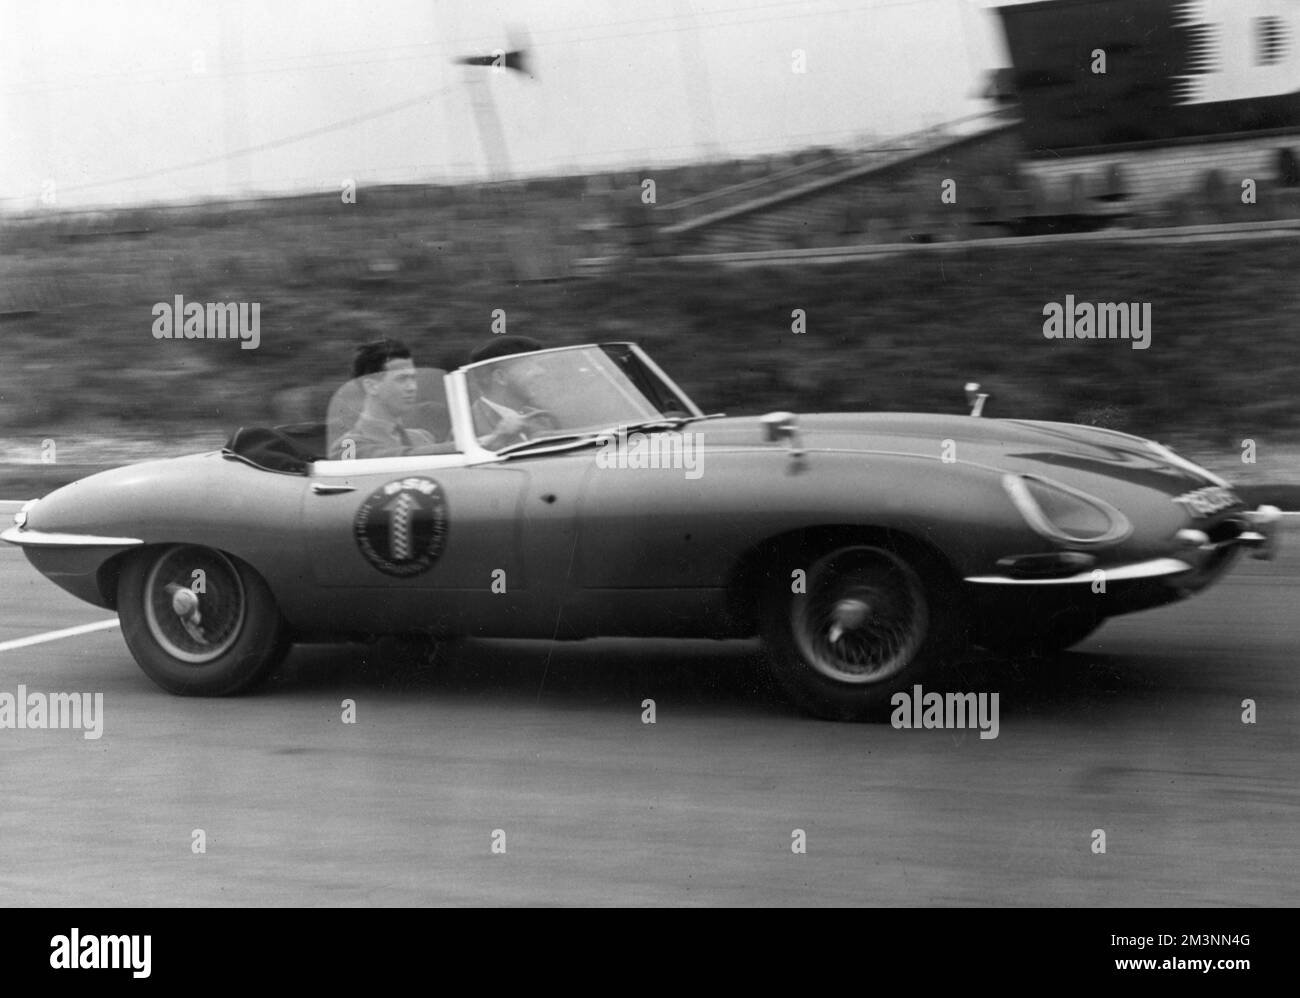 Der 19-jährige Prinz Michael von Kent (geboren 1942) fuhr im April 1962 mit 100mph km in einem Jaguar E-TYPE auf der Rennstrecke Brands Hatch. Der Prinz war in der vergangenen Woche Mitglied des Instituts für fortgeschrittene Autofahrer geworden und hat seinen Test in einem Mini bestanden. Datum: 1962 Stockfoto